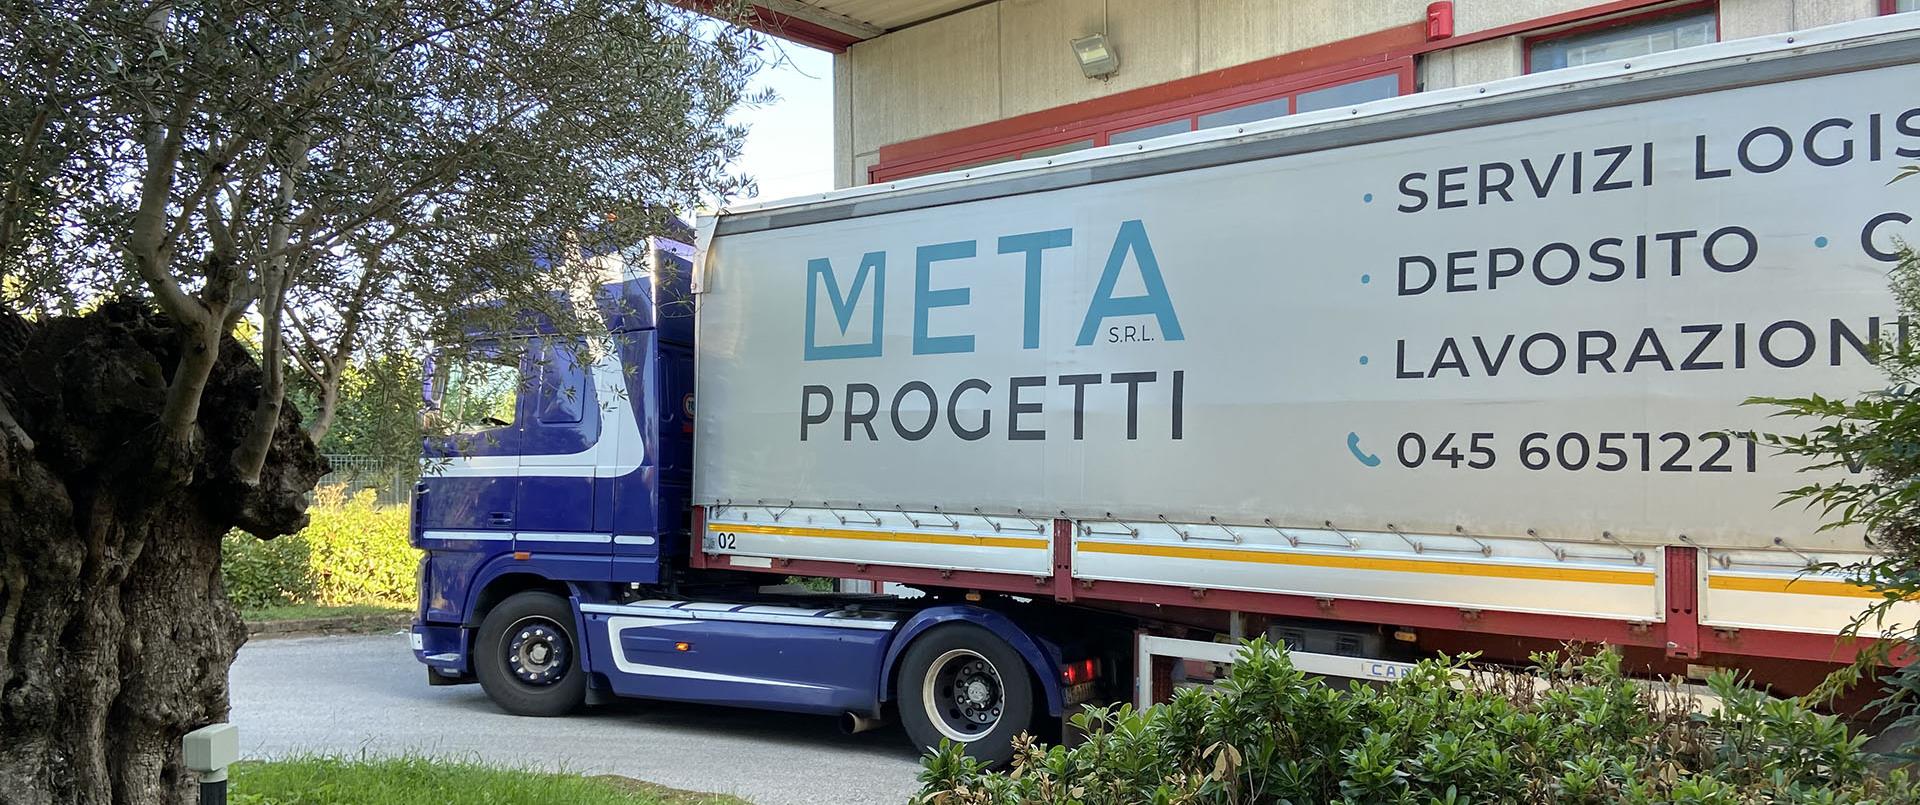 Servizi di logistica e deposito in provincia di Verona